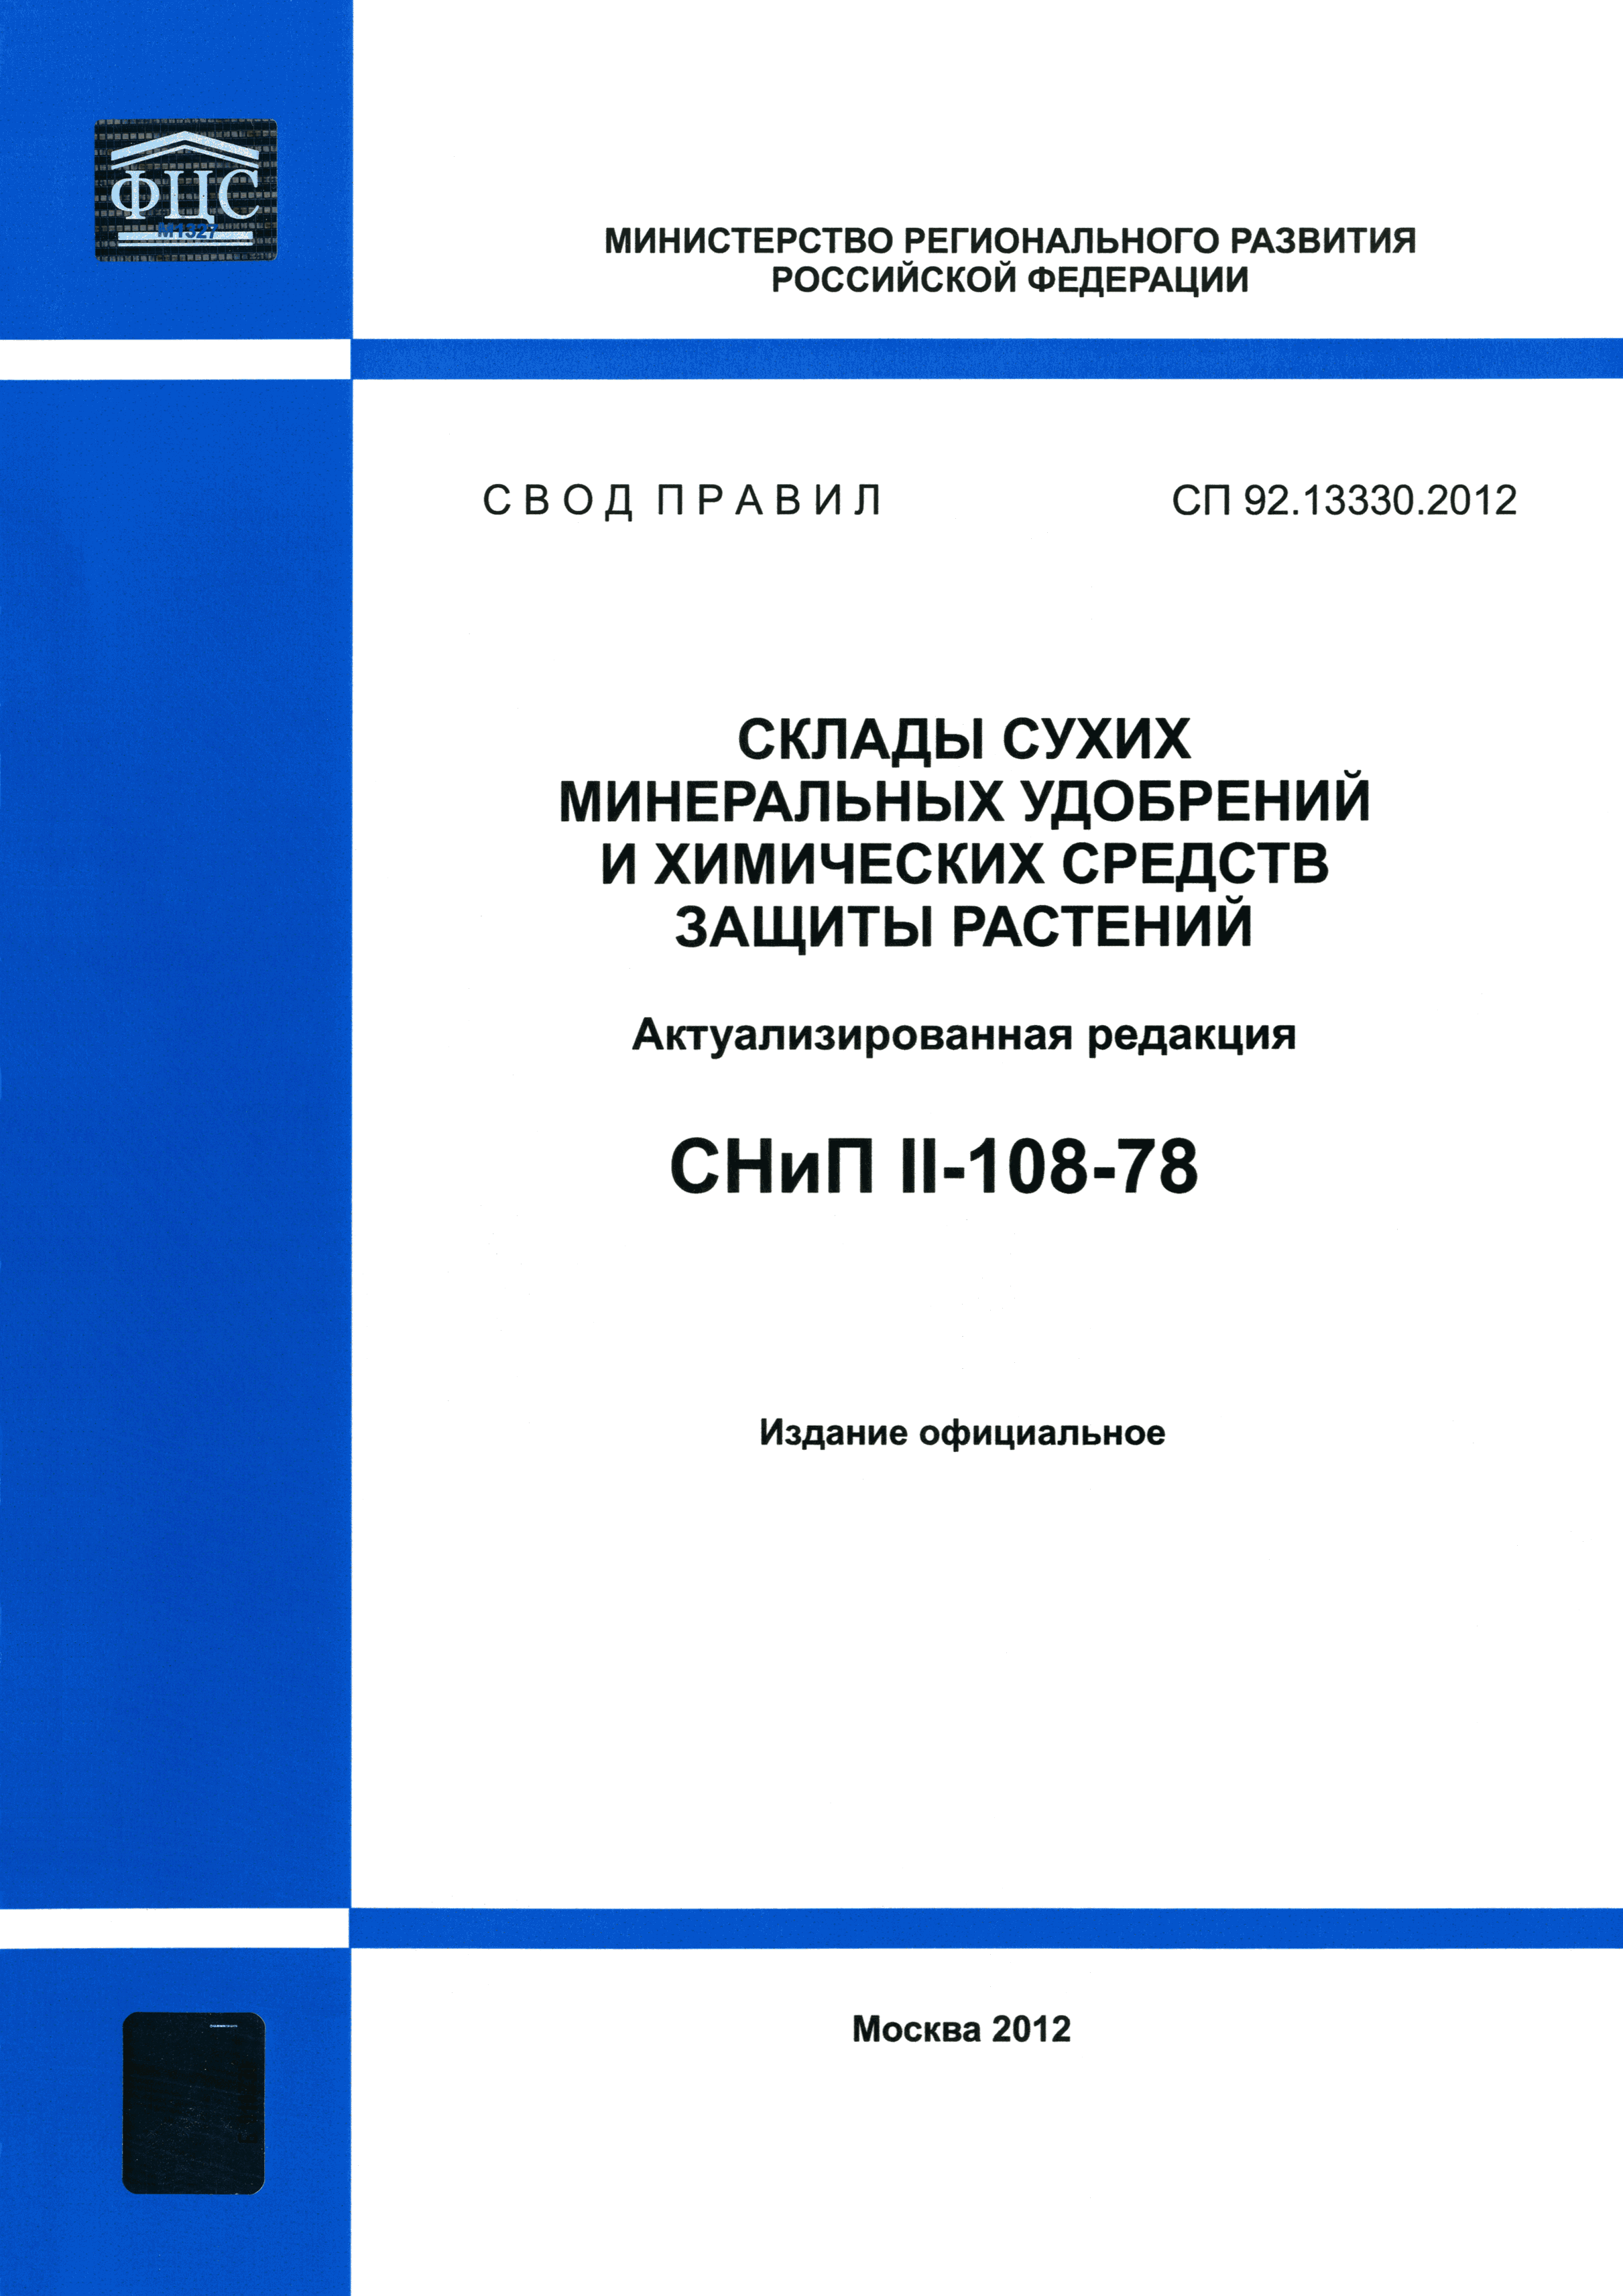 СП 92.13330.2012